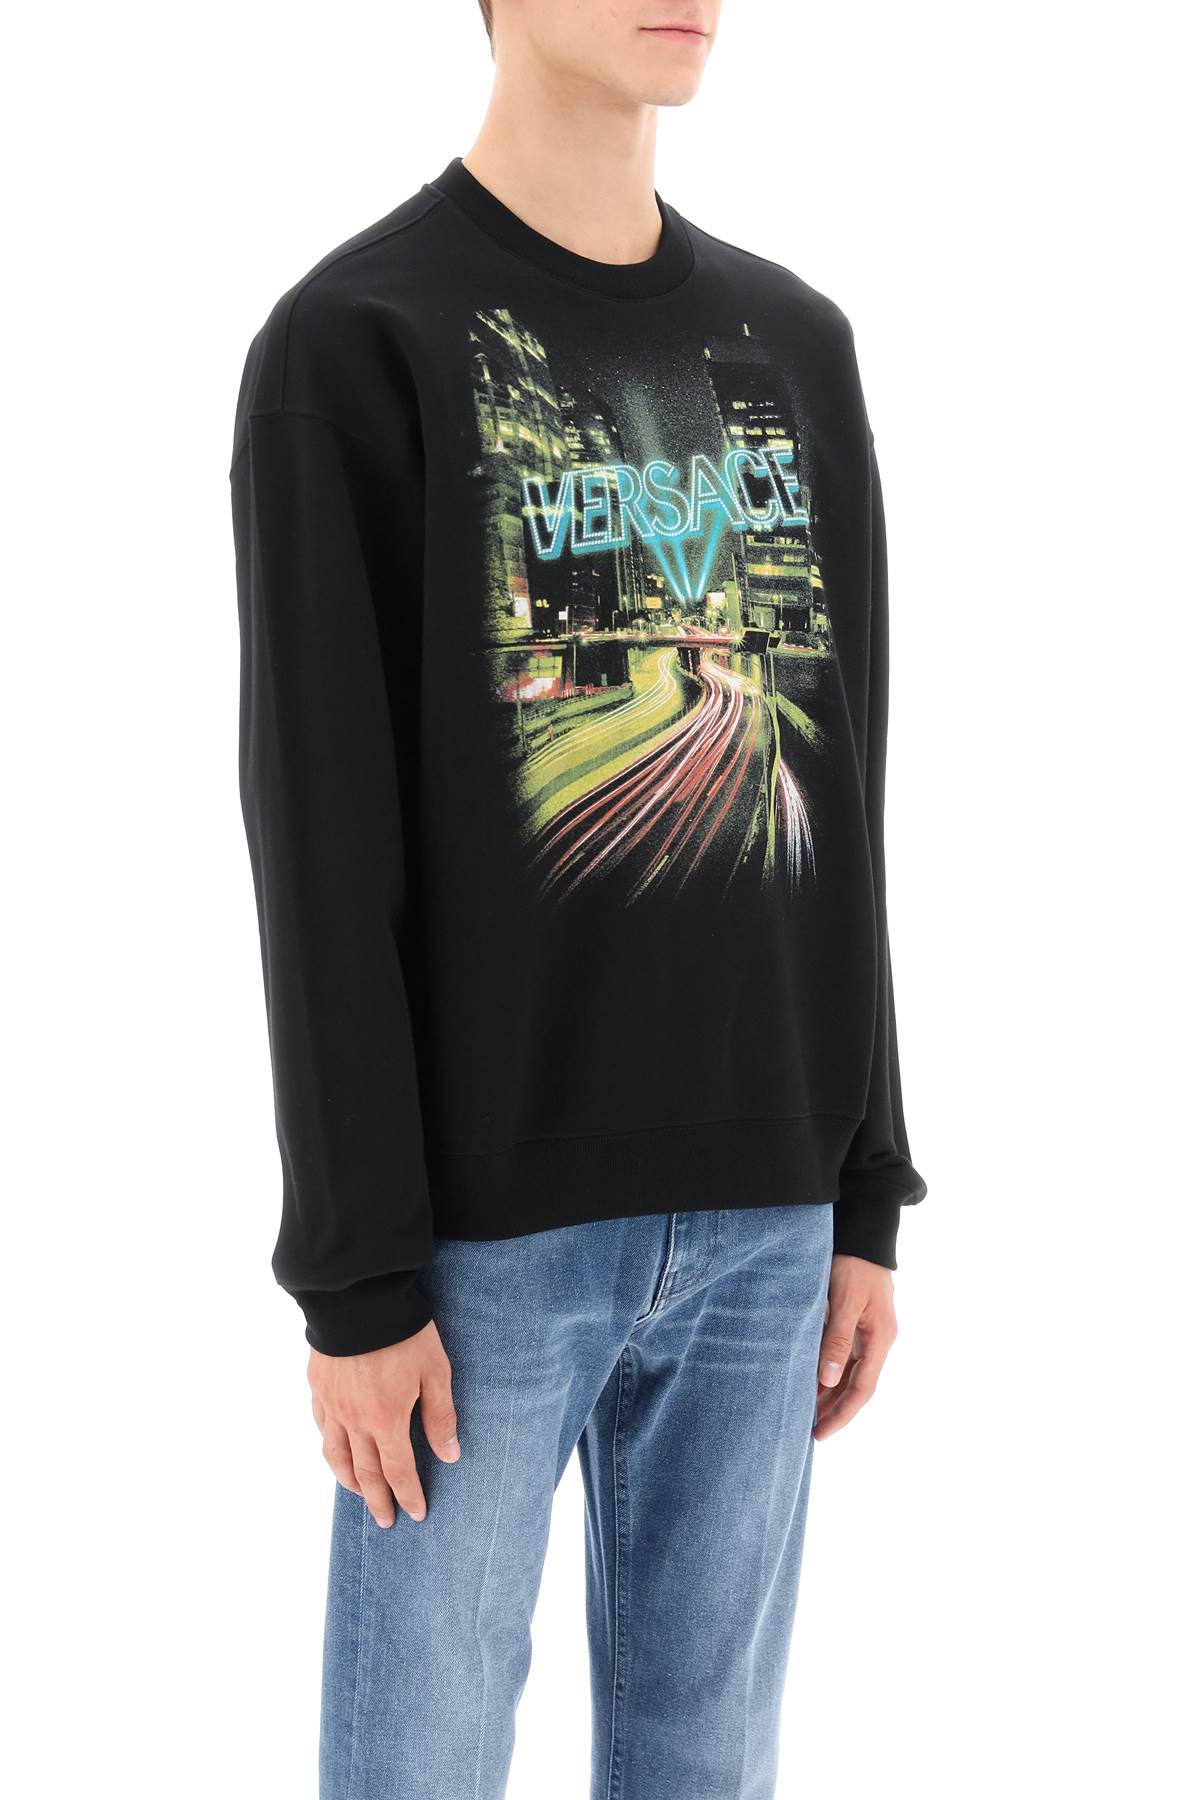 Versace Versace crew-neck sweatshirt with city lights print